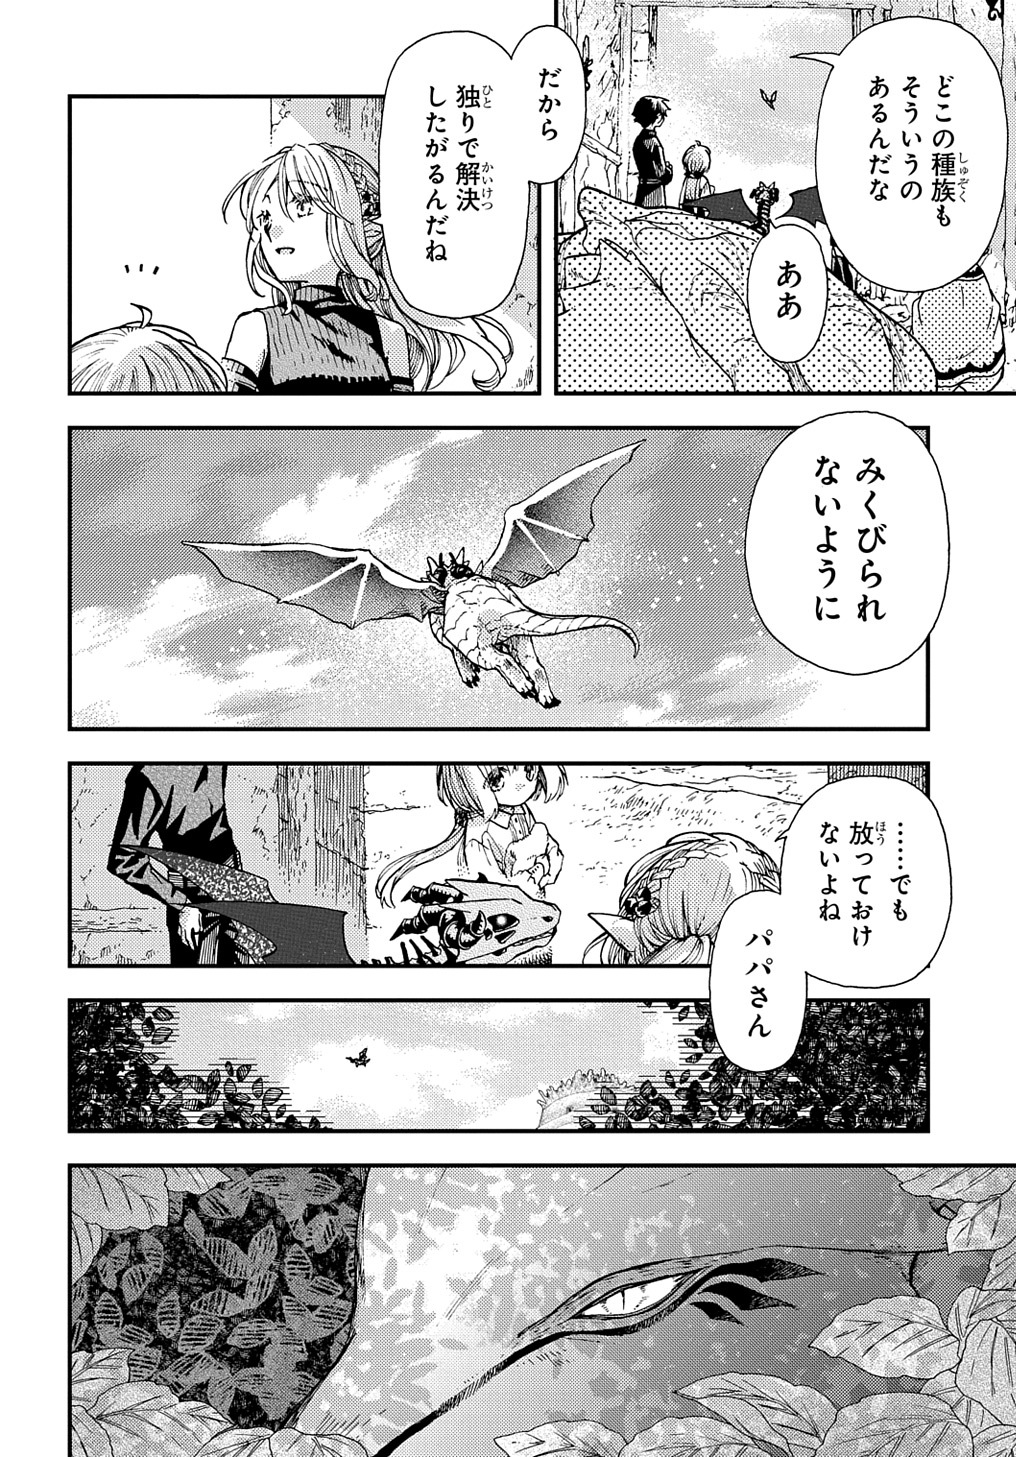 Hone Dragon no Mana Musume - Chapter 30.1 - Page 10